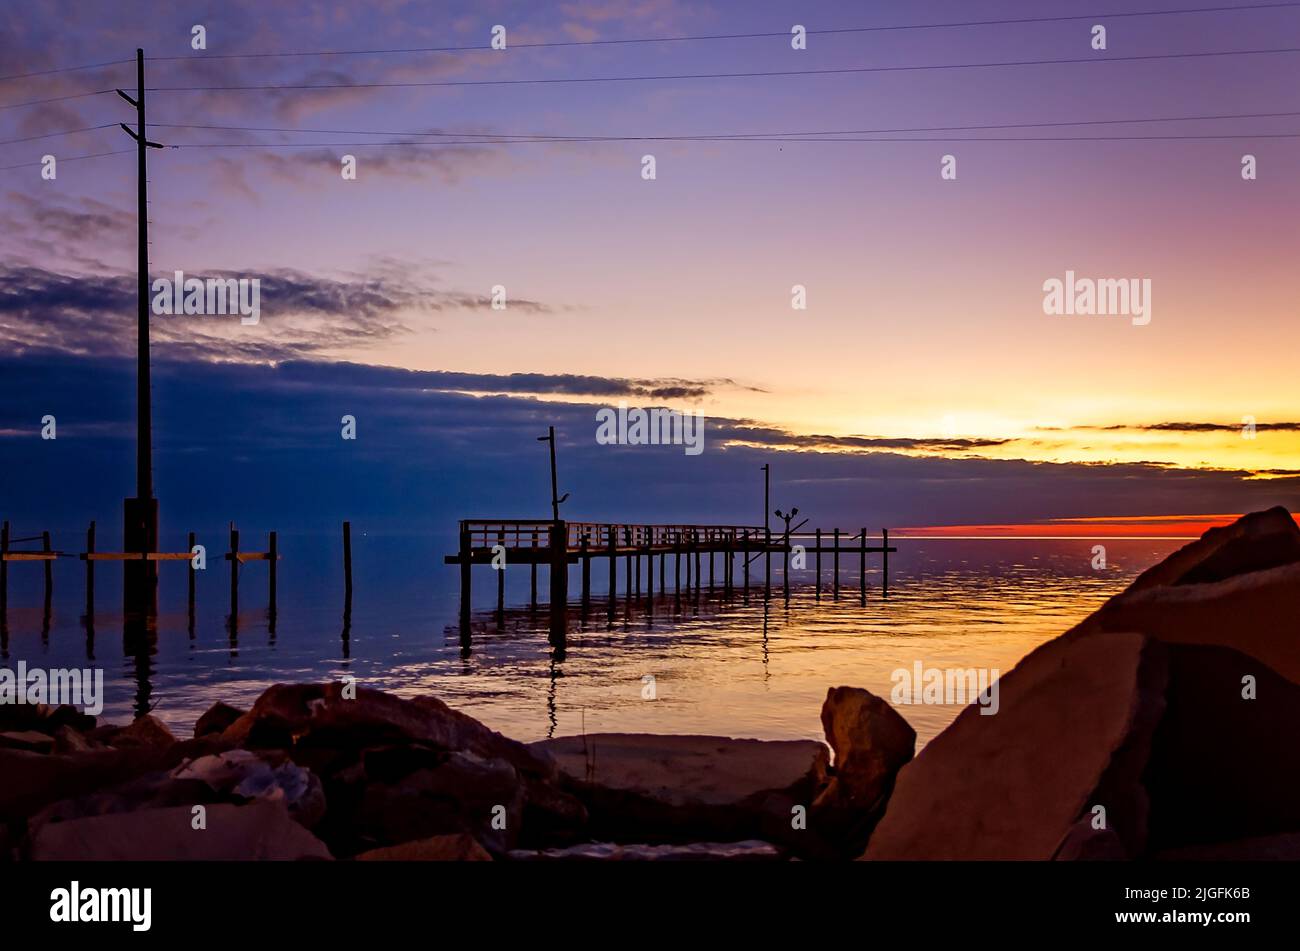 Le soleil se couche sur la baie Heron à Cedar point, le 31 octobre 2020, à Coden, Alabama. Banque D'Images